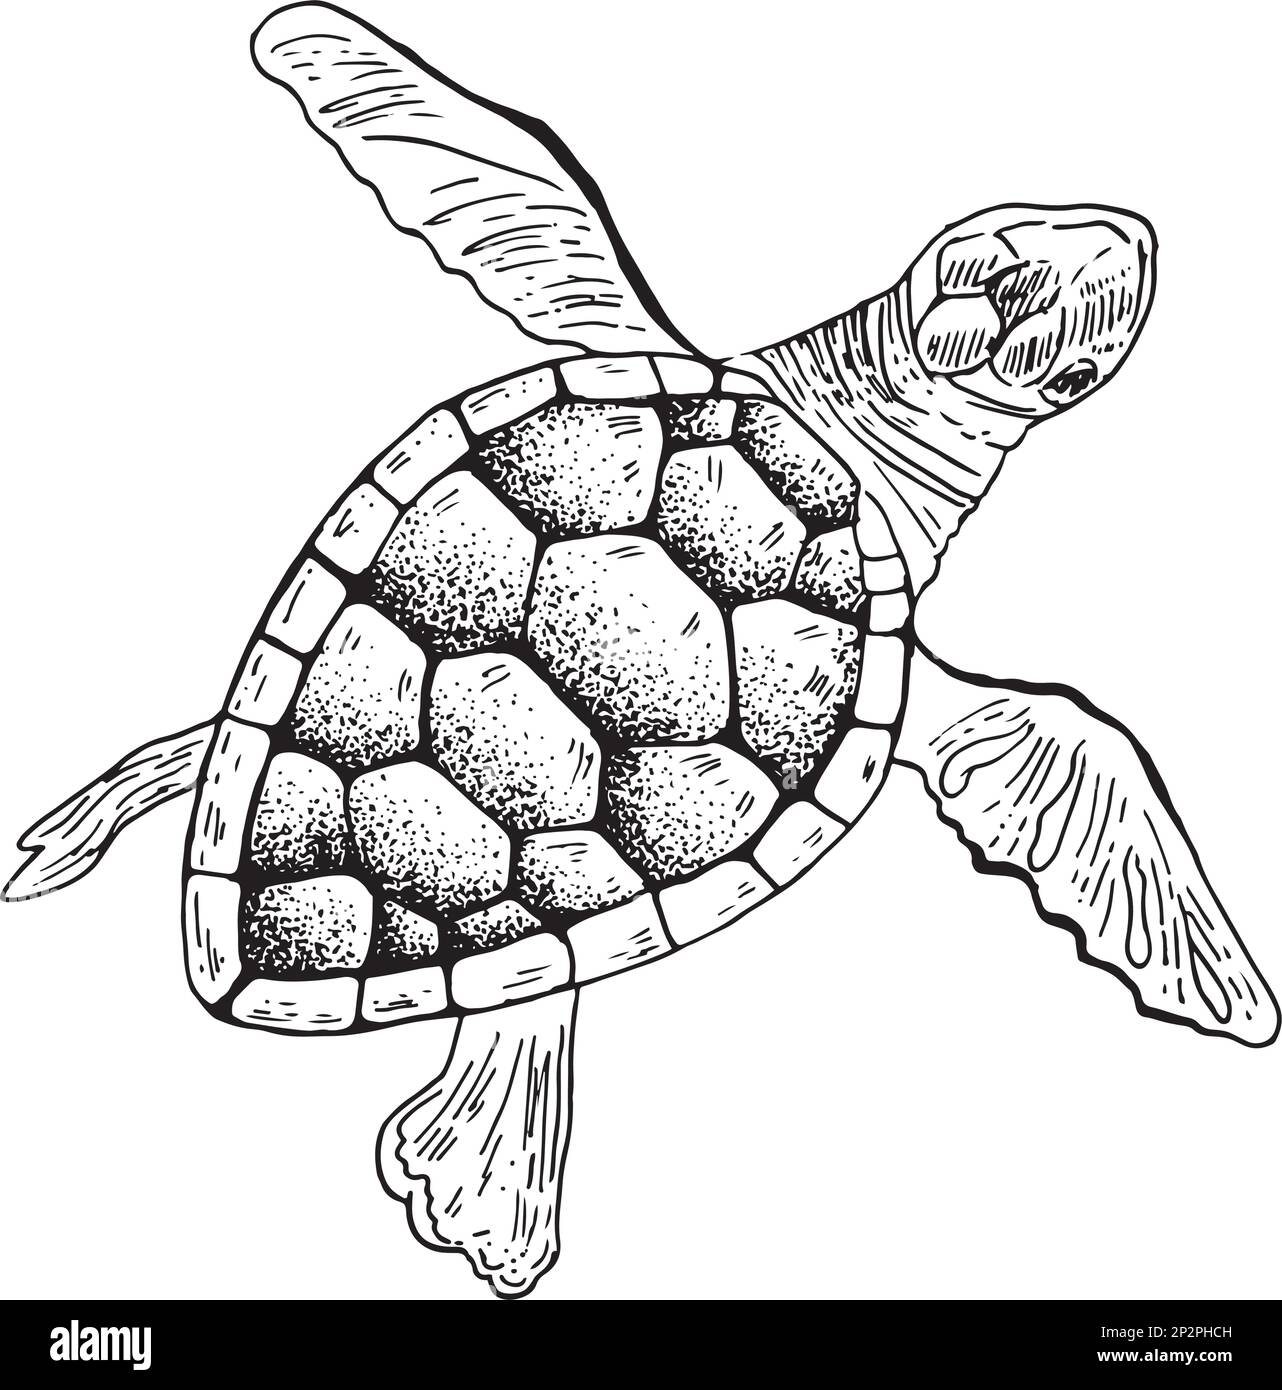 Tortue de mer dessin à la main dessin de style gravure animaux sous-marins illustration vectorielle Illustration de Vecteur